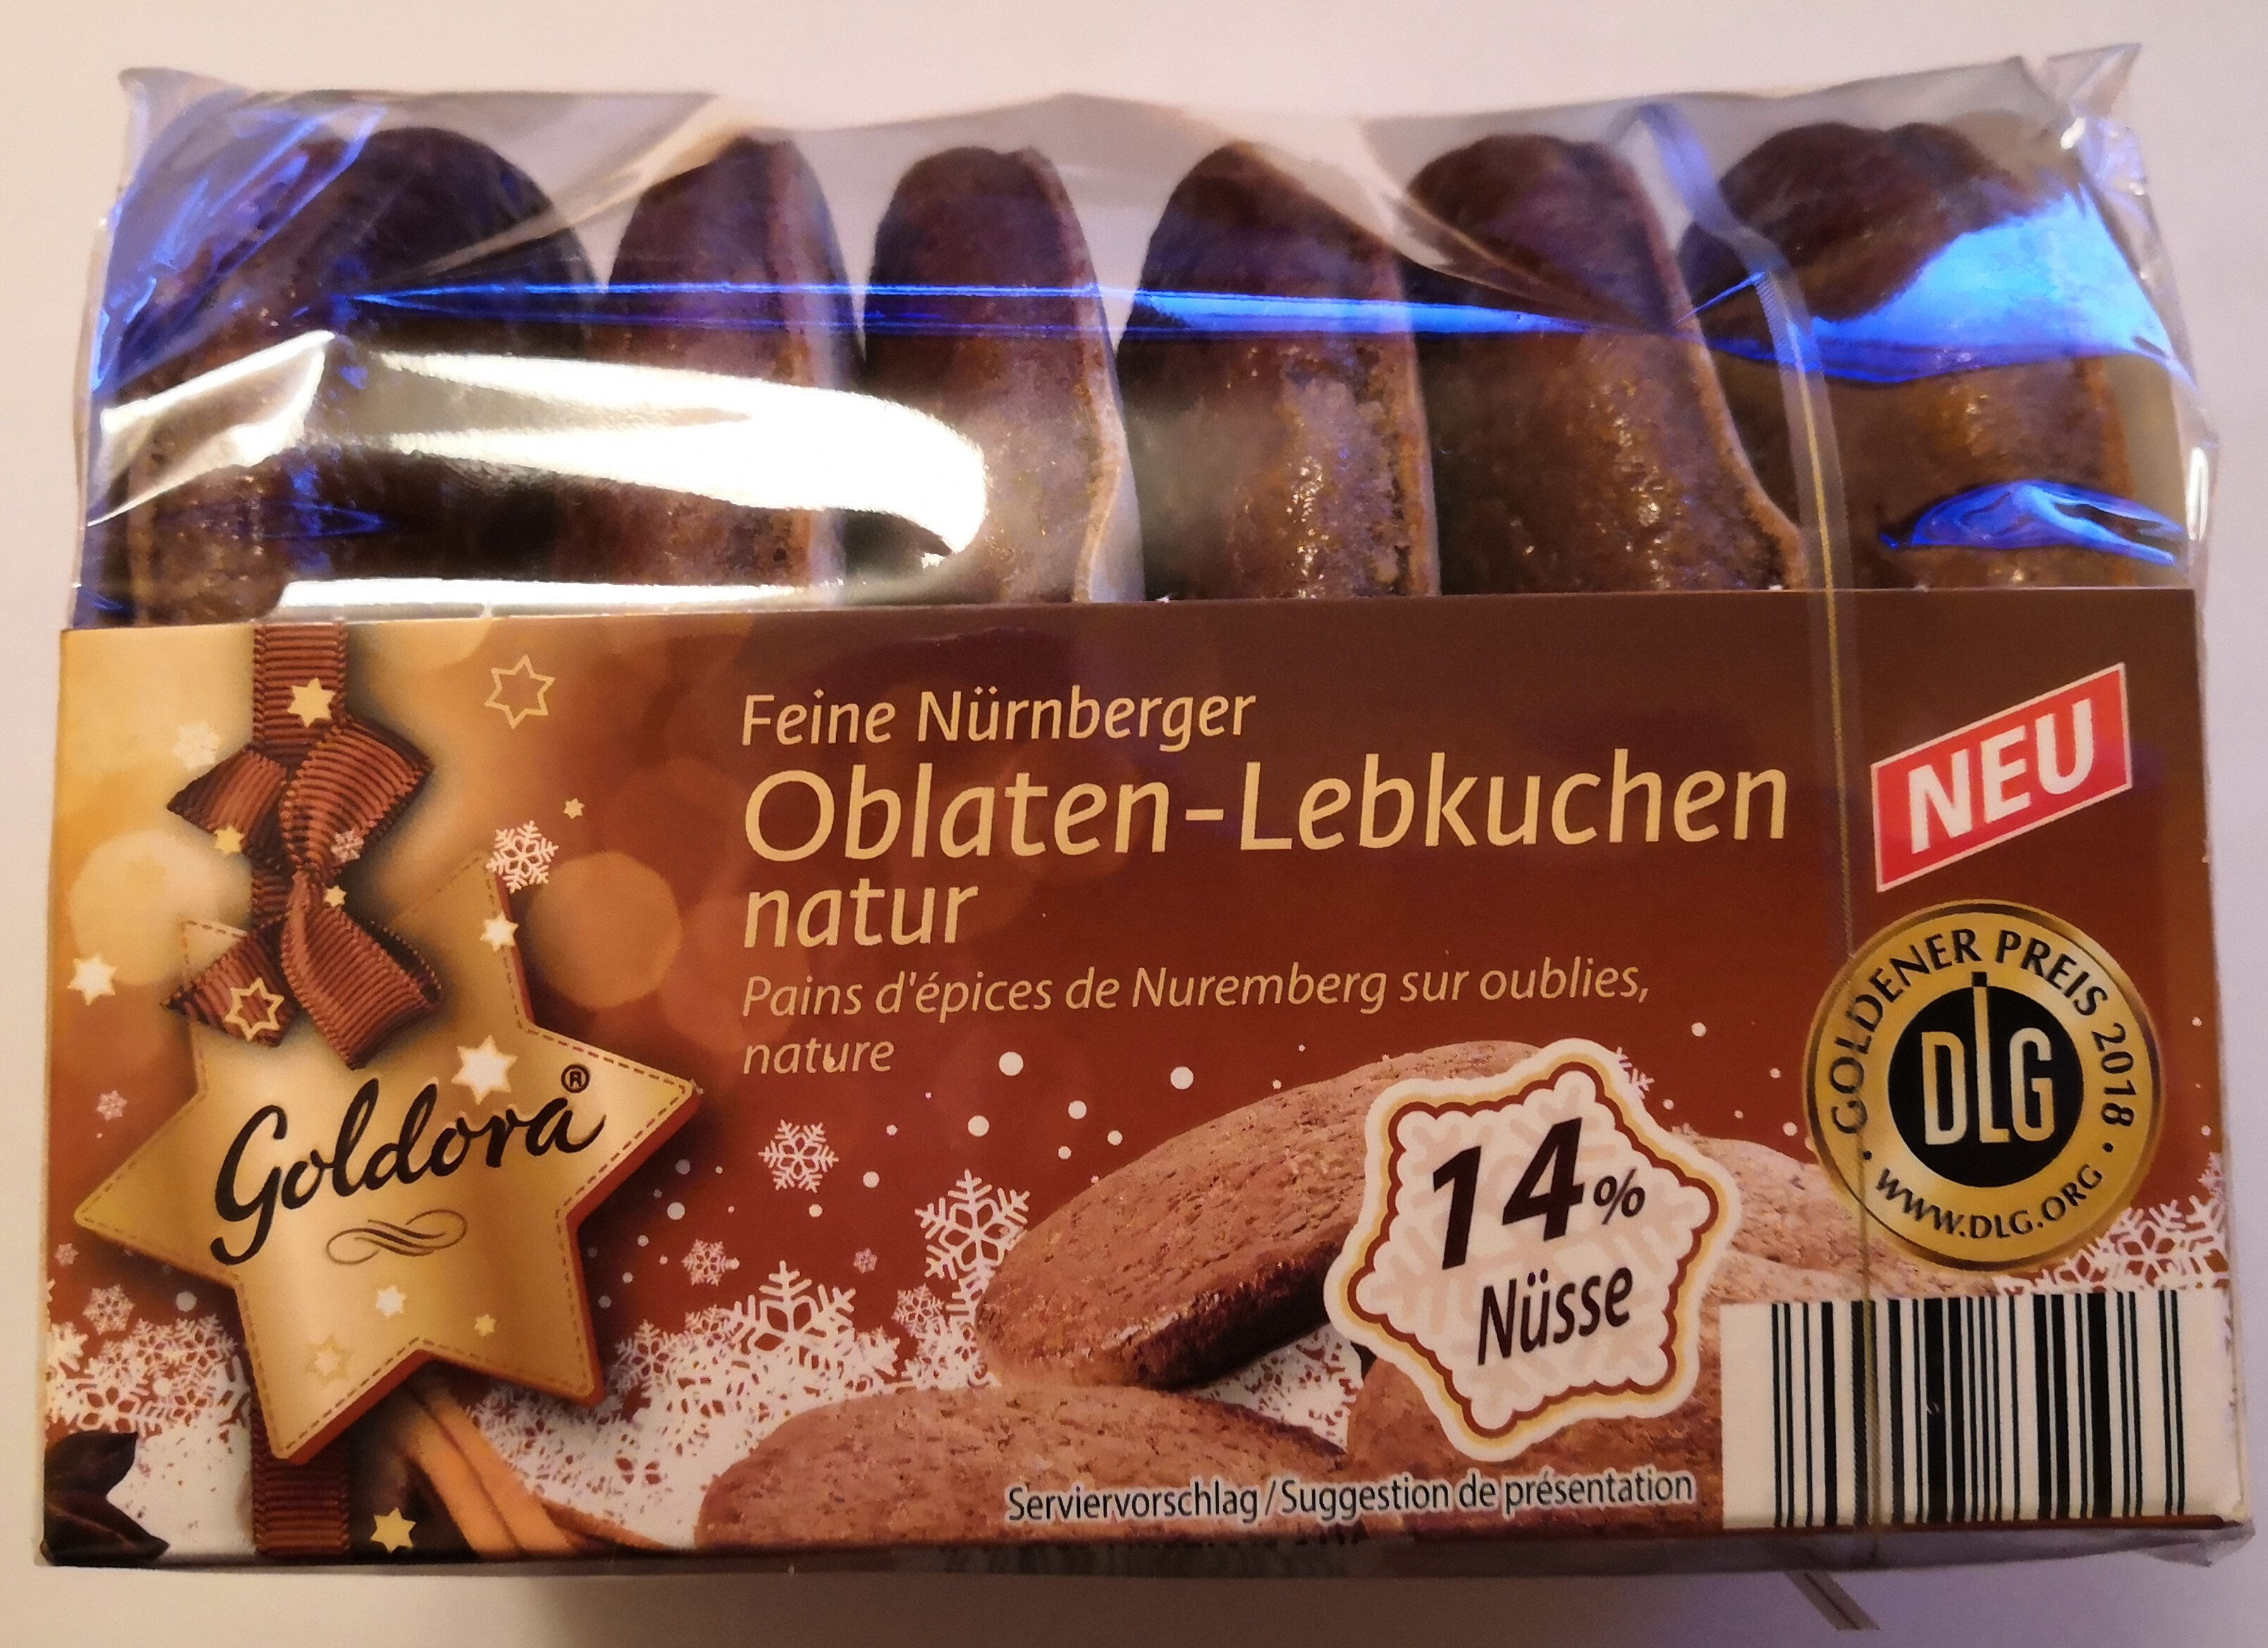 Goldora Feine Nürnberger Oblaten-Lebkuchen, natur - Product - de